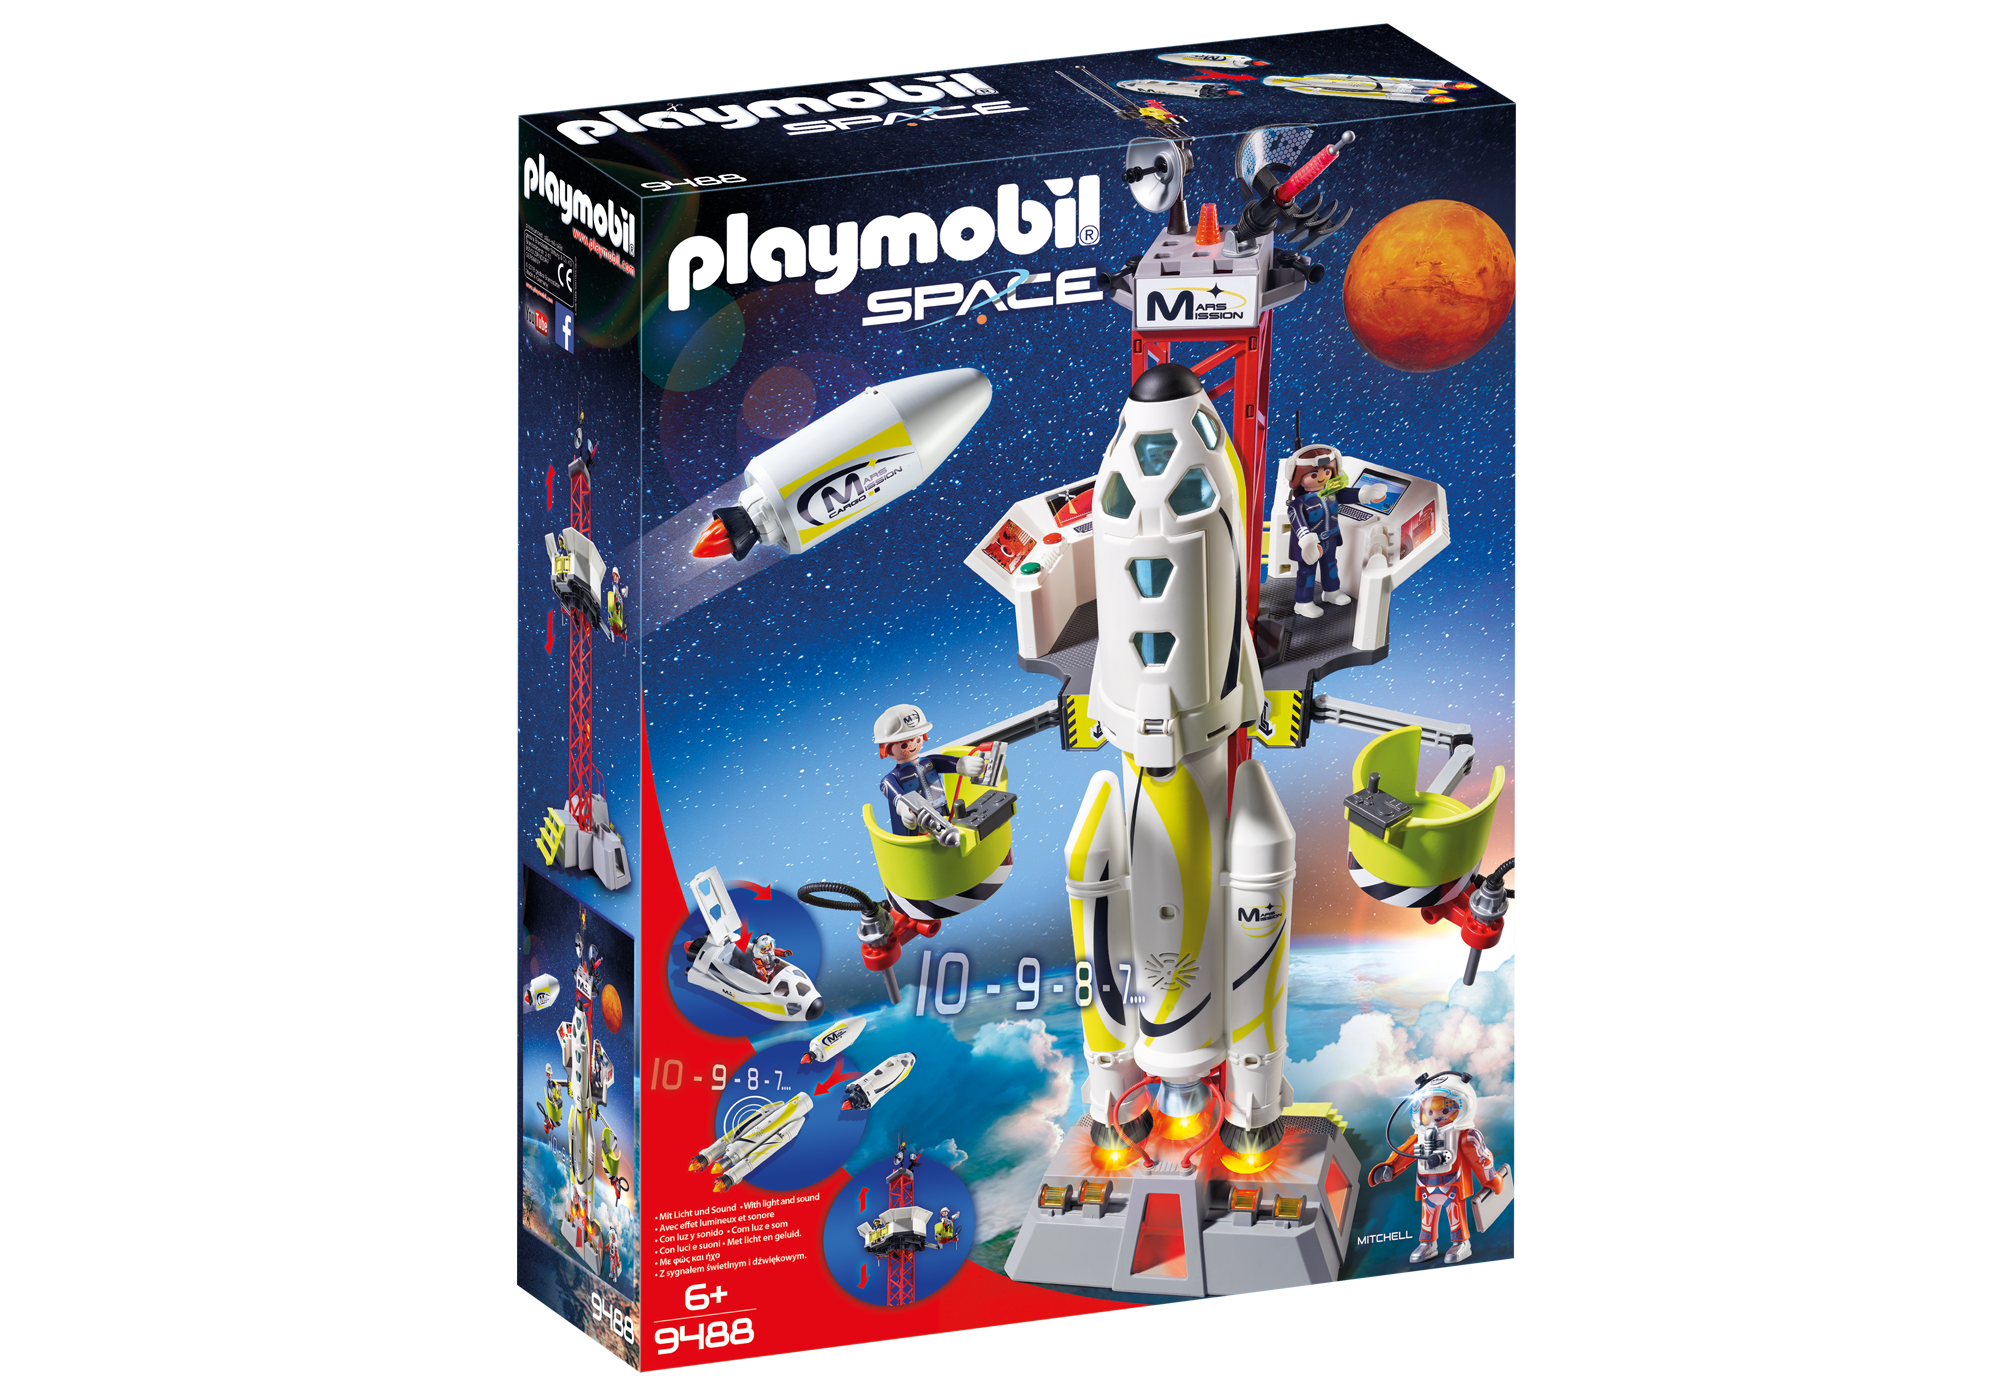 Playmobil Space 2018 9488_product_box_front?locale=de-DE,de,*&$pdp_product_main_xl$&strip=true